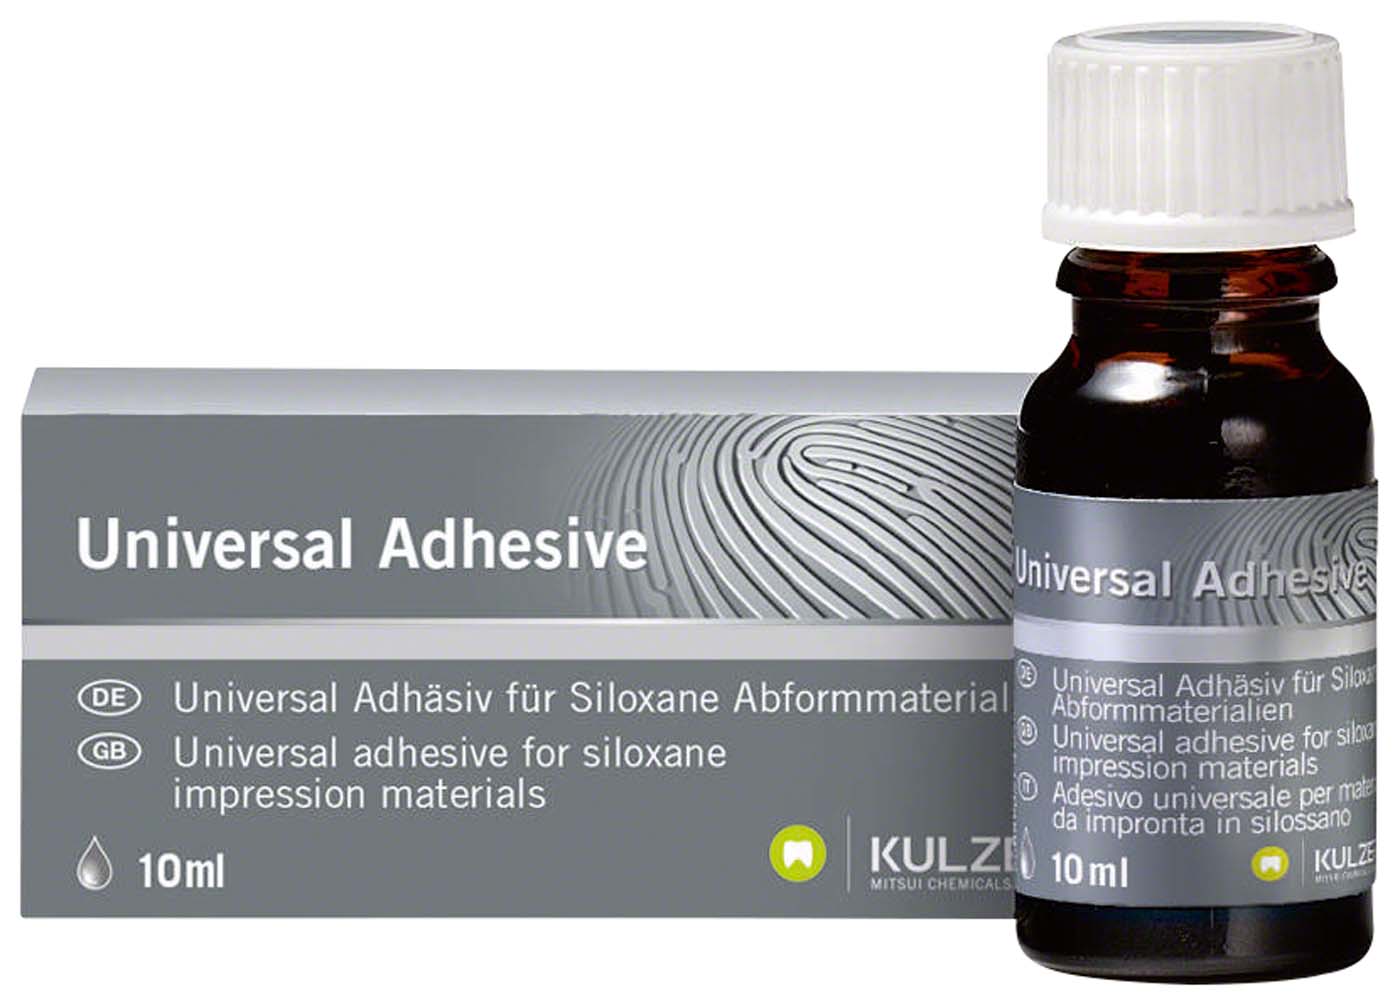 Universal Adhesive Kulzer